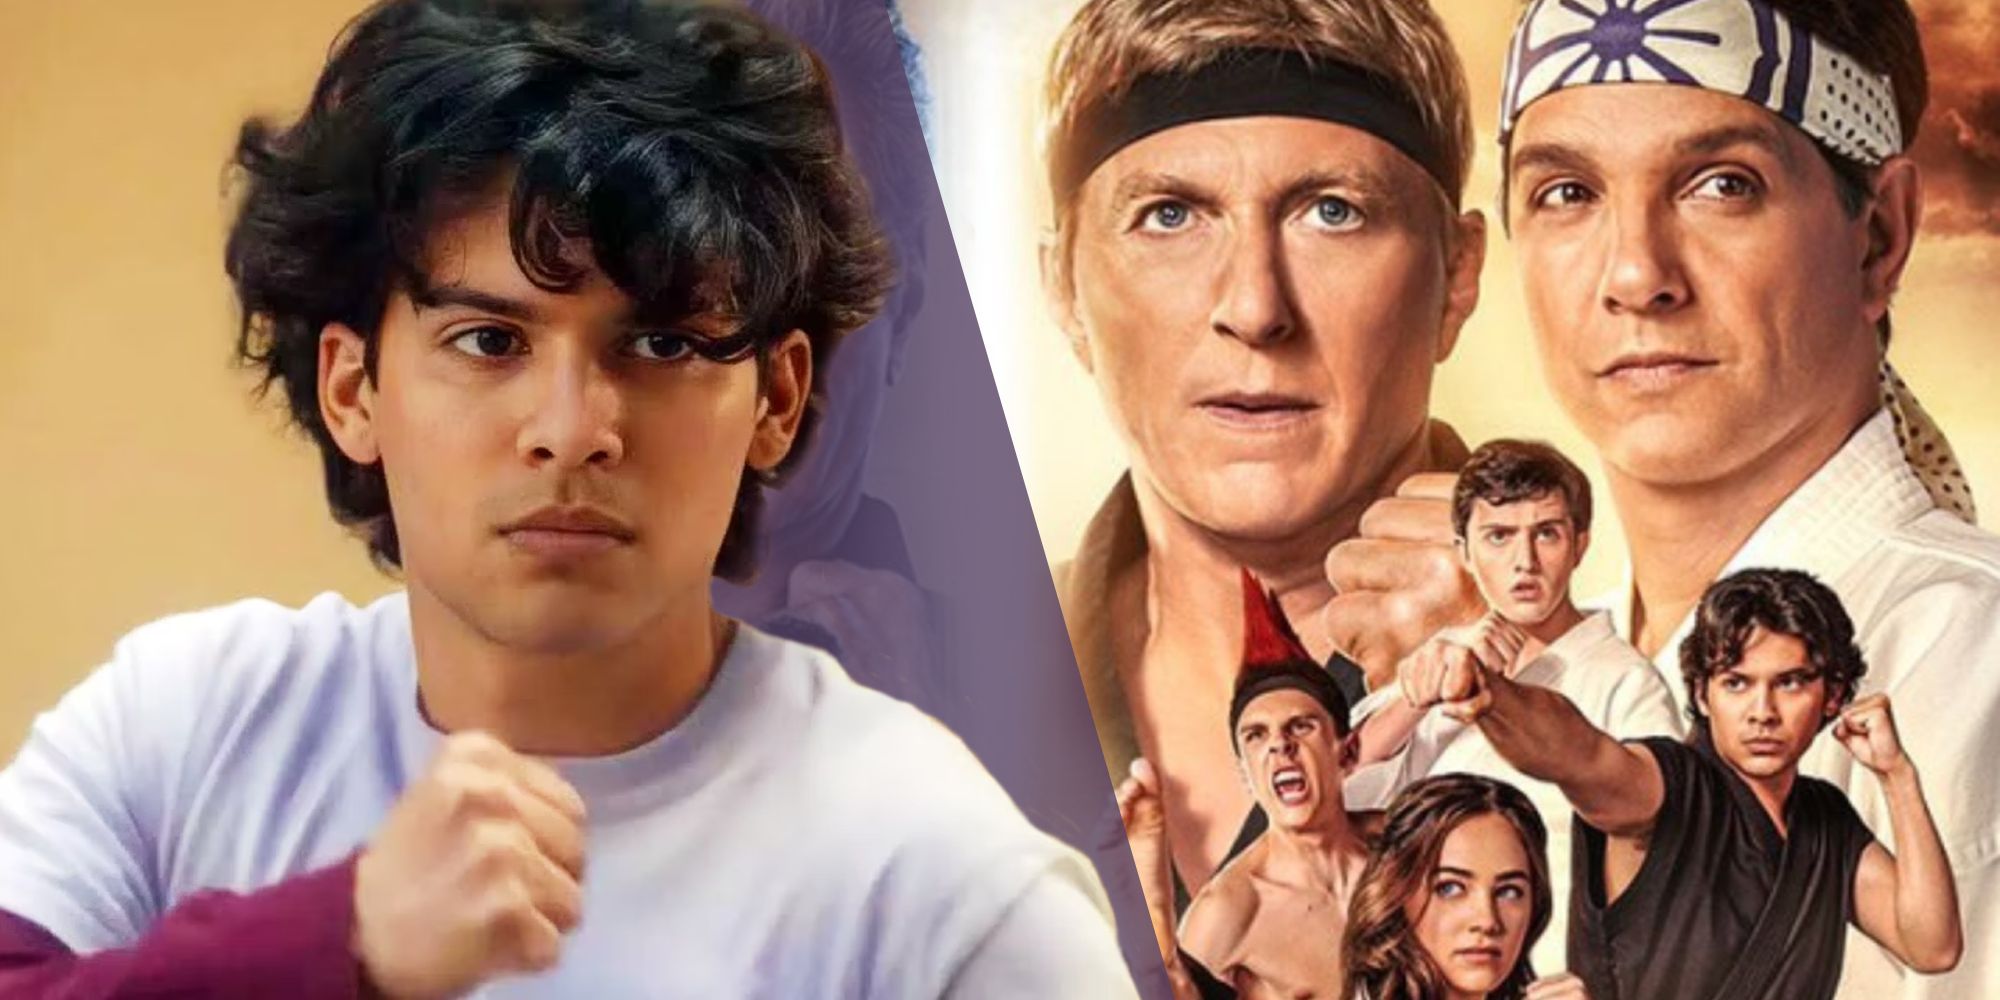 Xolo Maridueña raising his fists as Miguel Diaz next to the poster for Cobra Kai season 4 (2021)